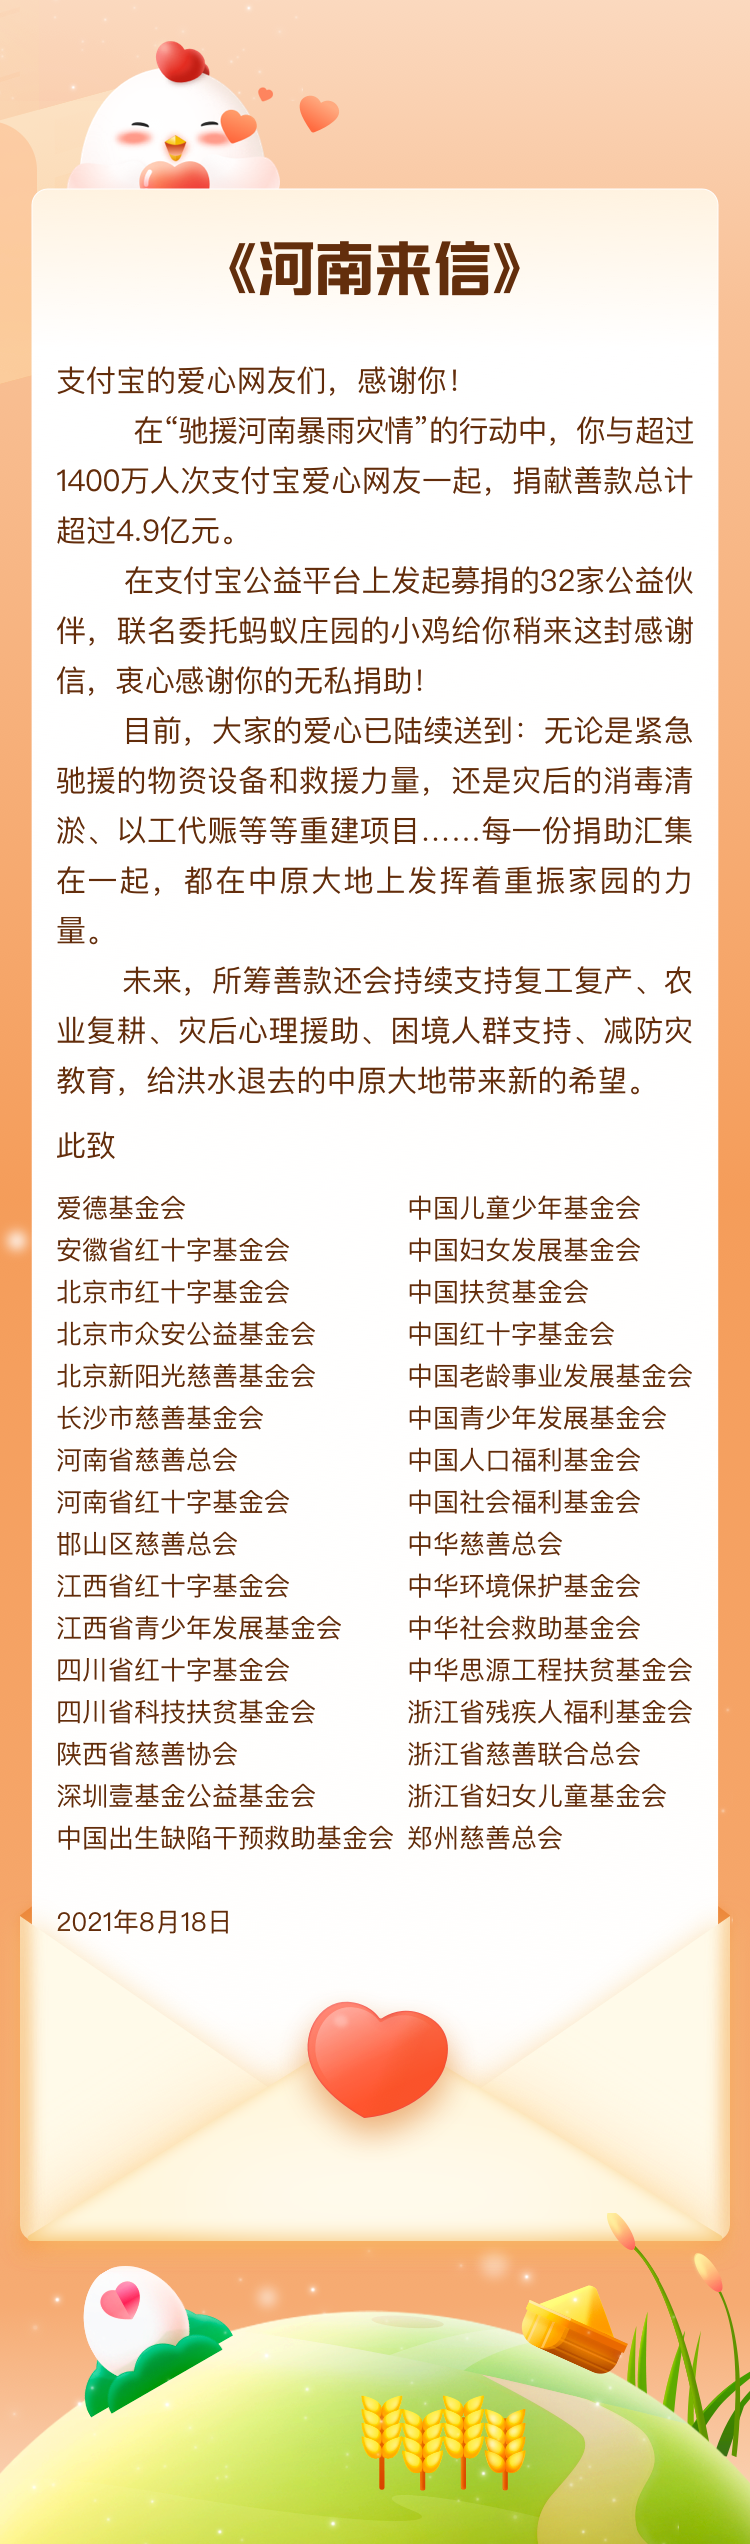 “32家公益机构给支付宝网友发感谢信，报告4.9亿河南捐款执行进展